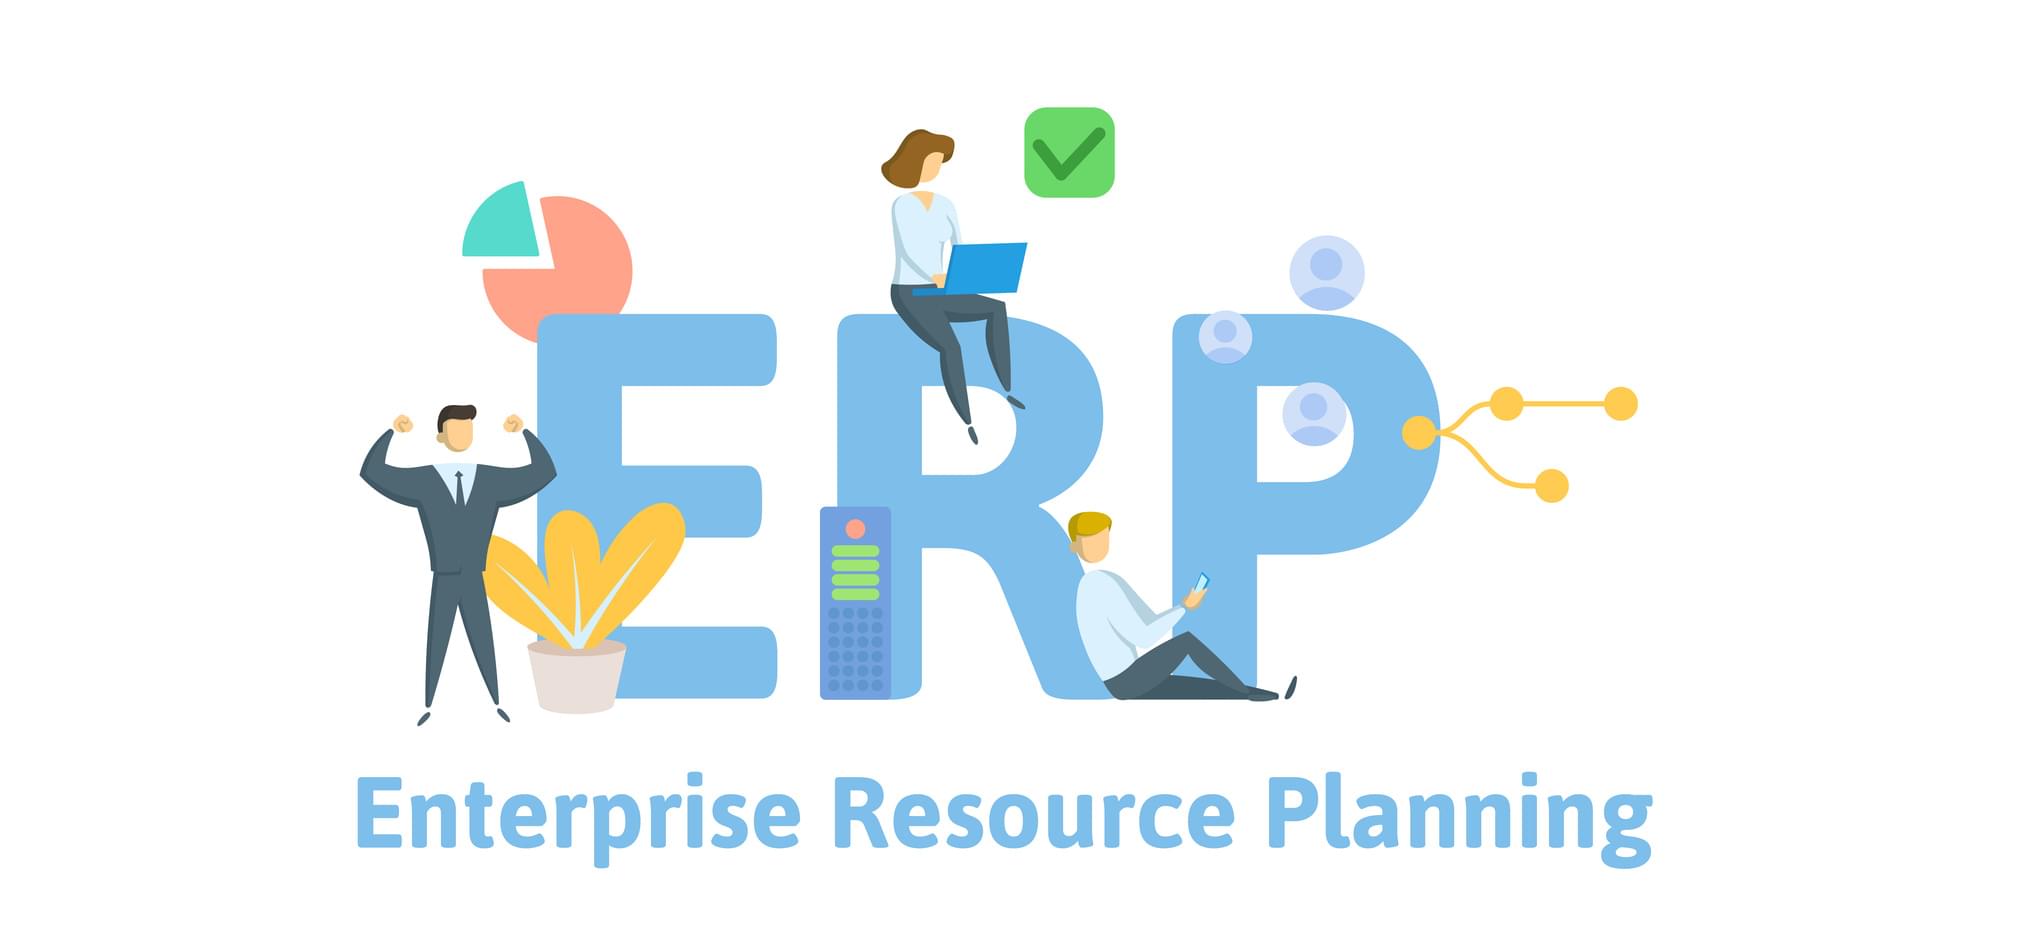 评估ERP系统的五个步骤   ERP系统评估指南